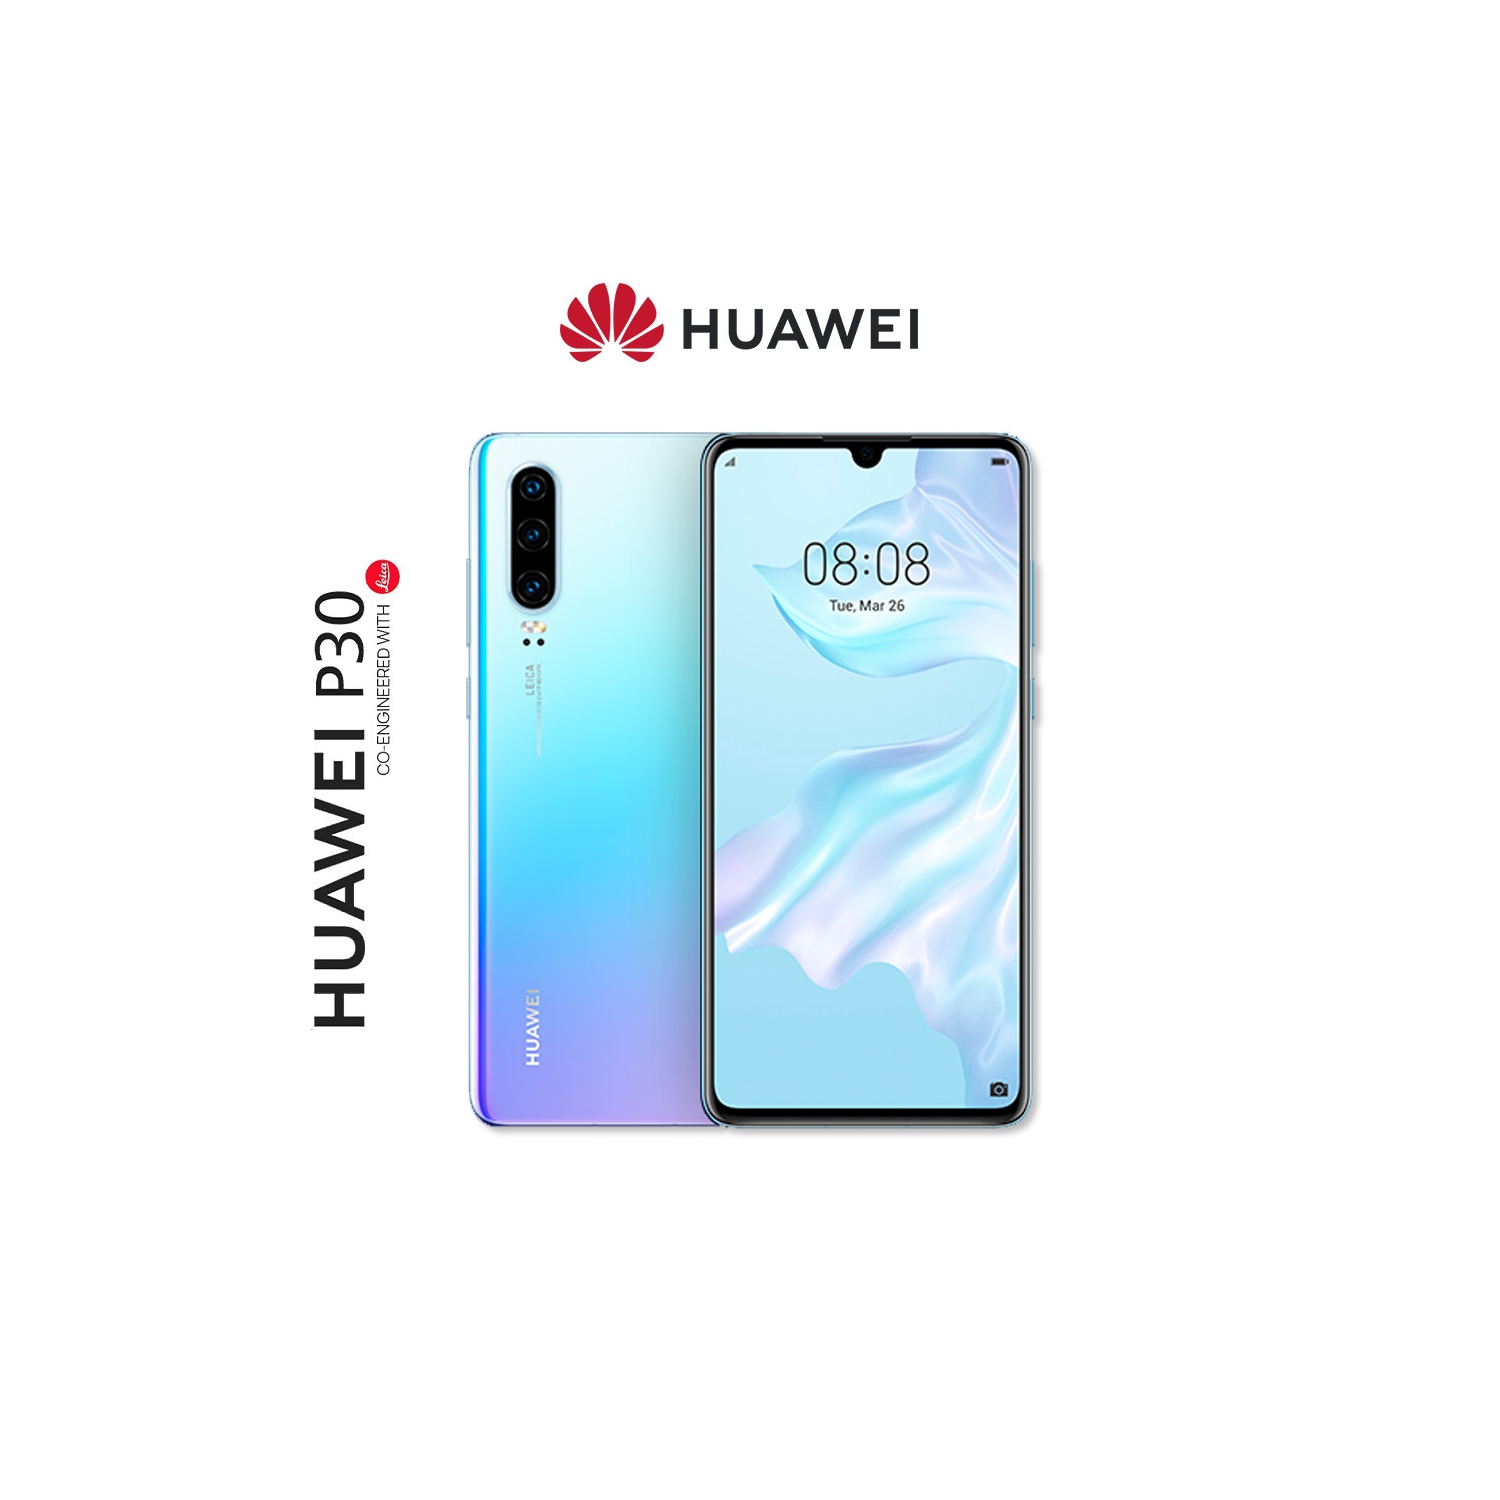 Huawei P30 (ELE-L04) 128GB - Smartphone - BreathingCrystal - Unlocked - Open Box